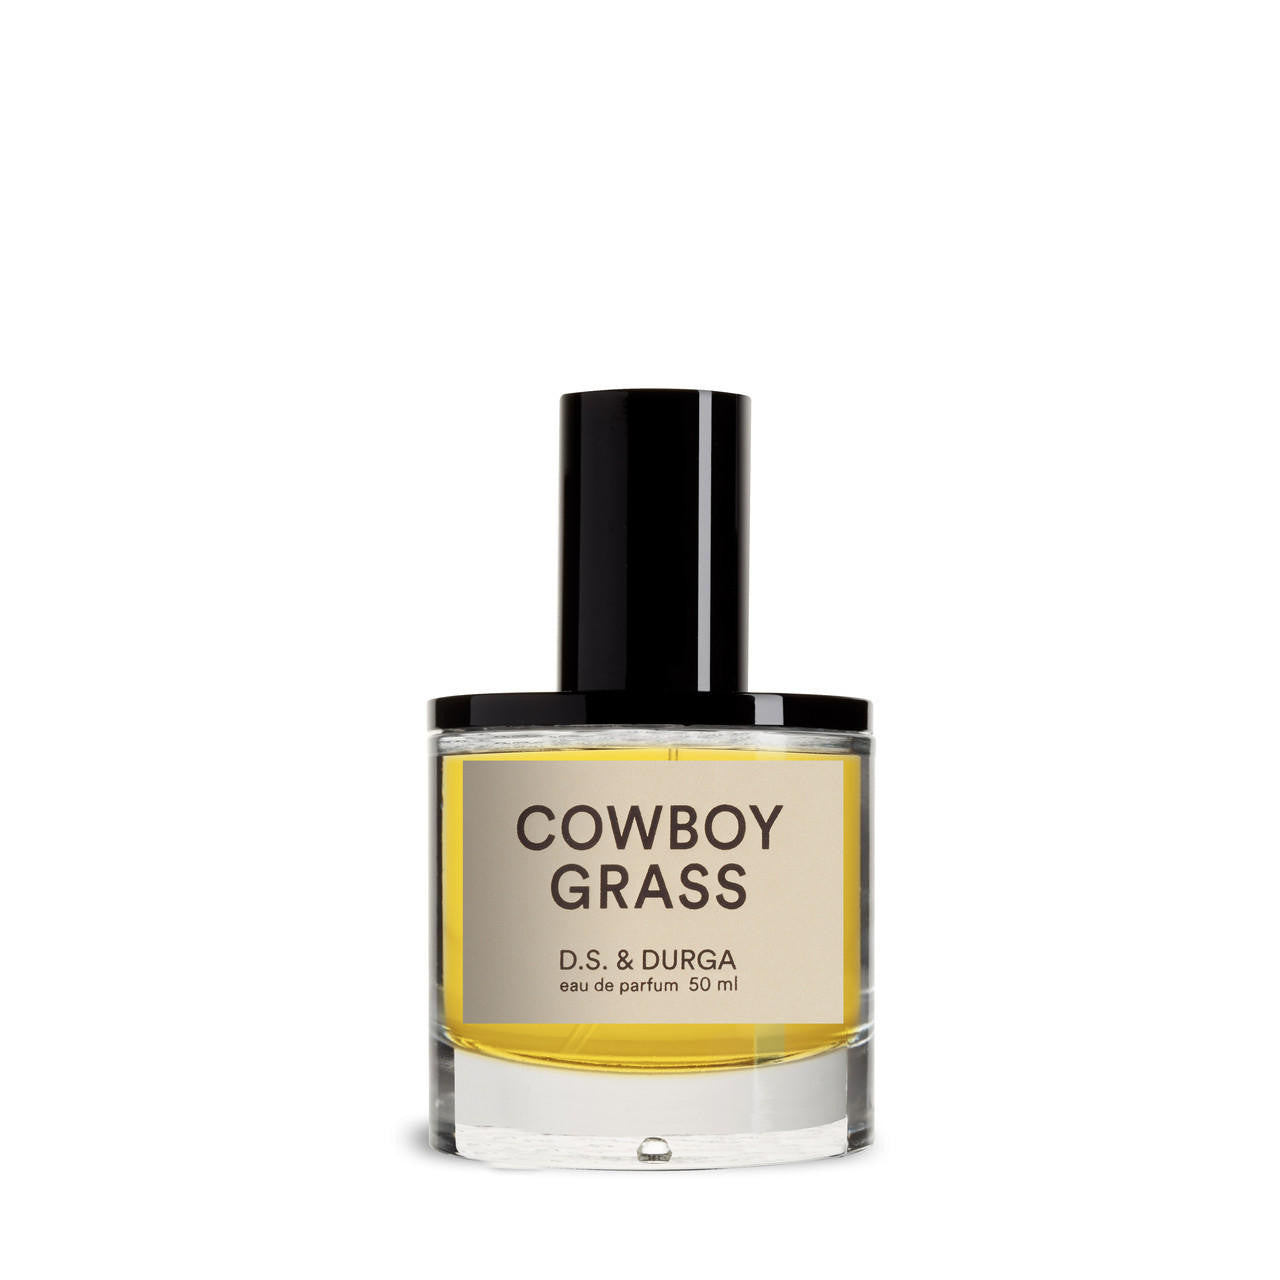 D.S. and DURGA D.S. & DURGA Cowboy Grass Eau de Parfum 